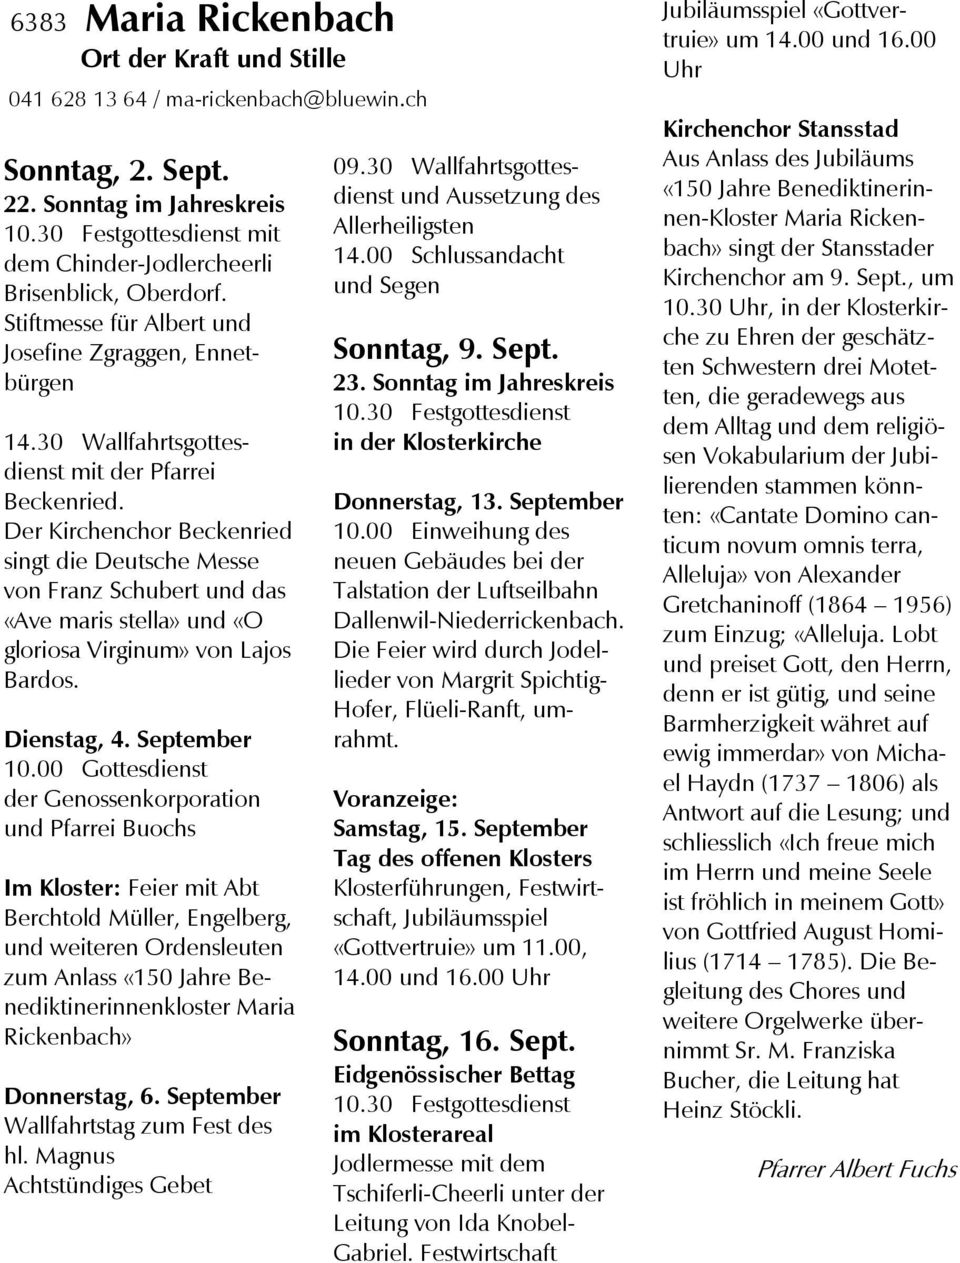 Der Kirchenchor Beckenried singt die Deutsche Messe von Franz Schubert und das «Ave maris stella» und «O gloriosa Virginum» von Lajos Bardos. Dienstag, 4. September 10.